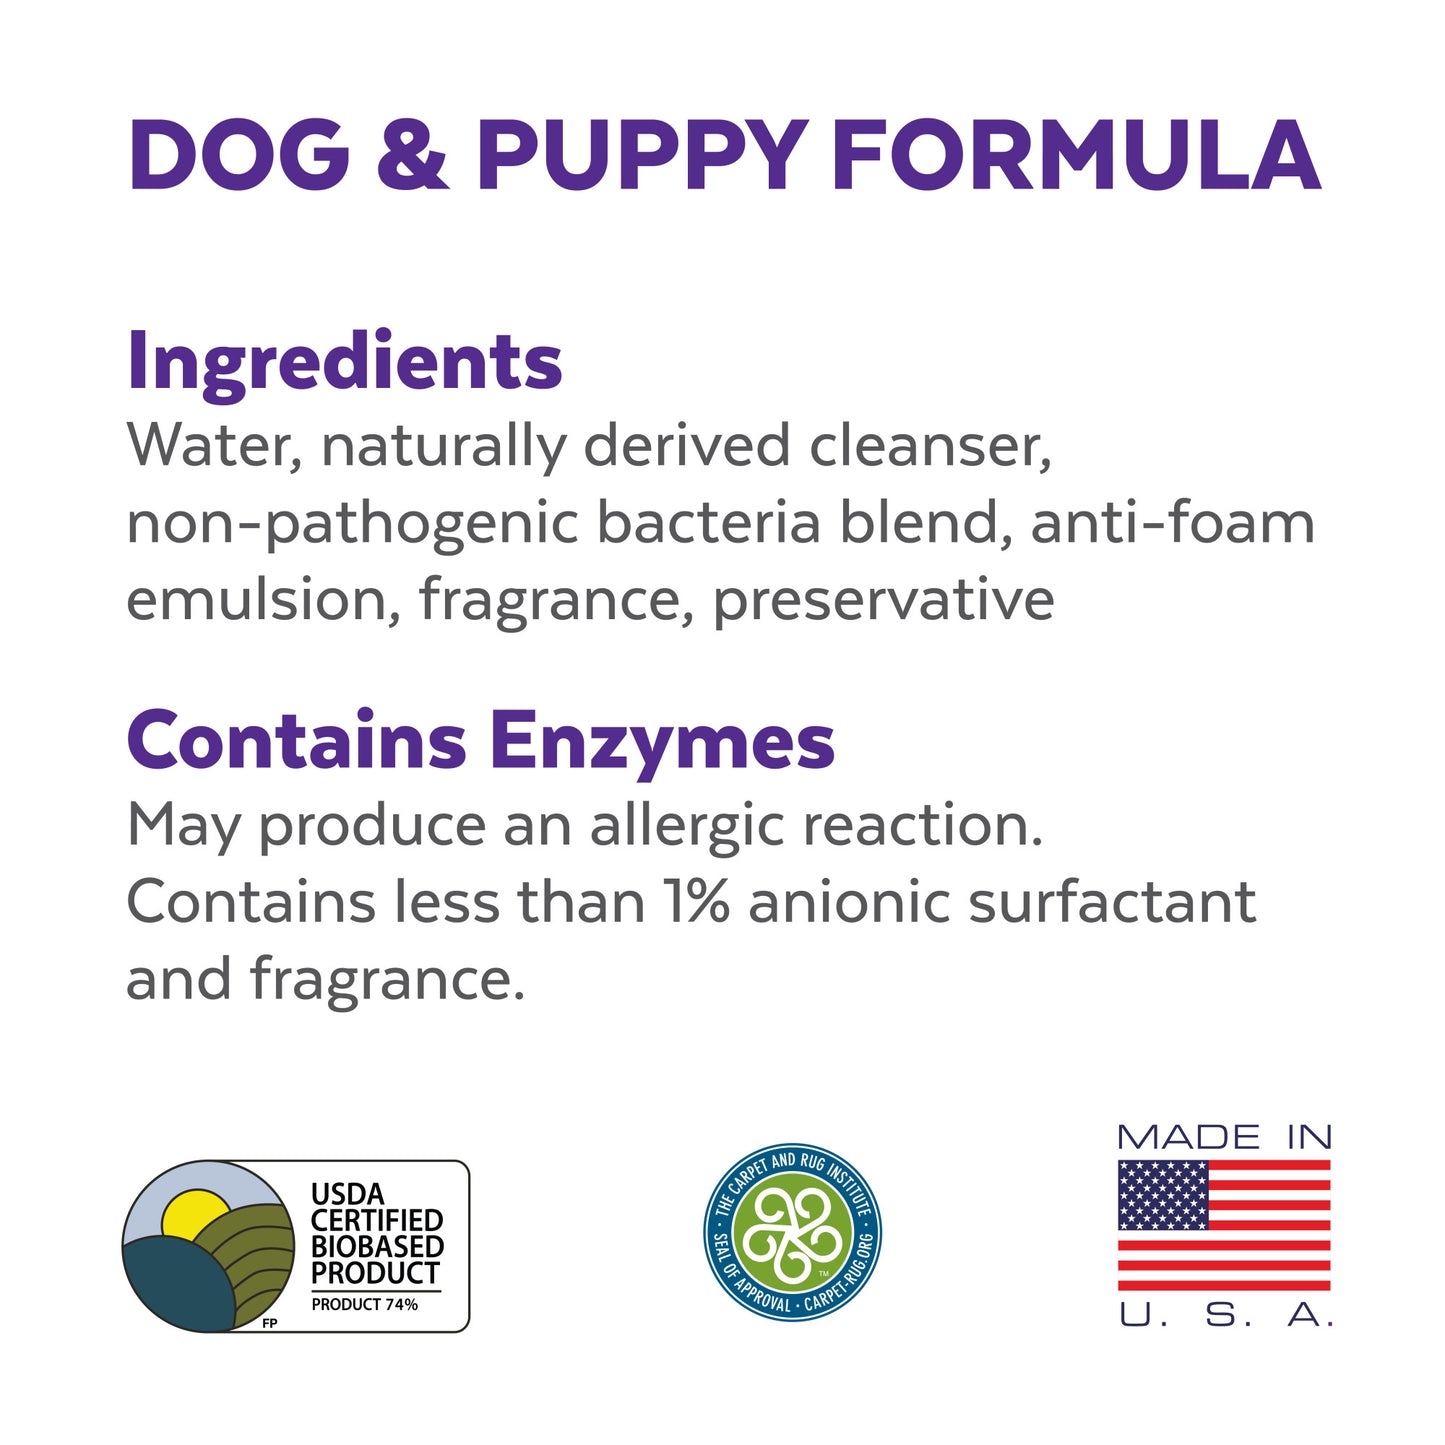 Urine Off® Limpiador de Superficies y Alfombras para Perro y cachorro 500ml